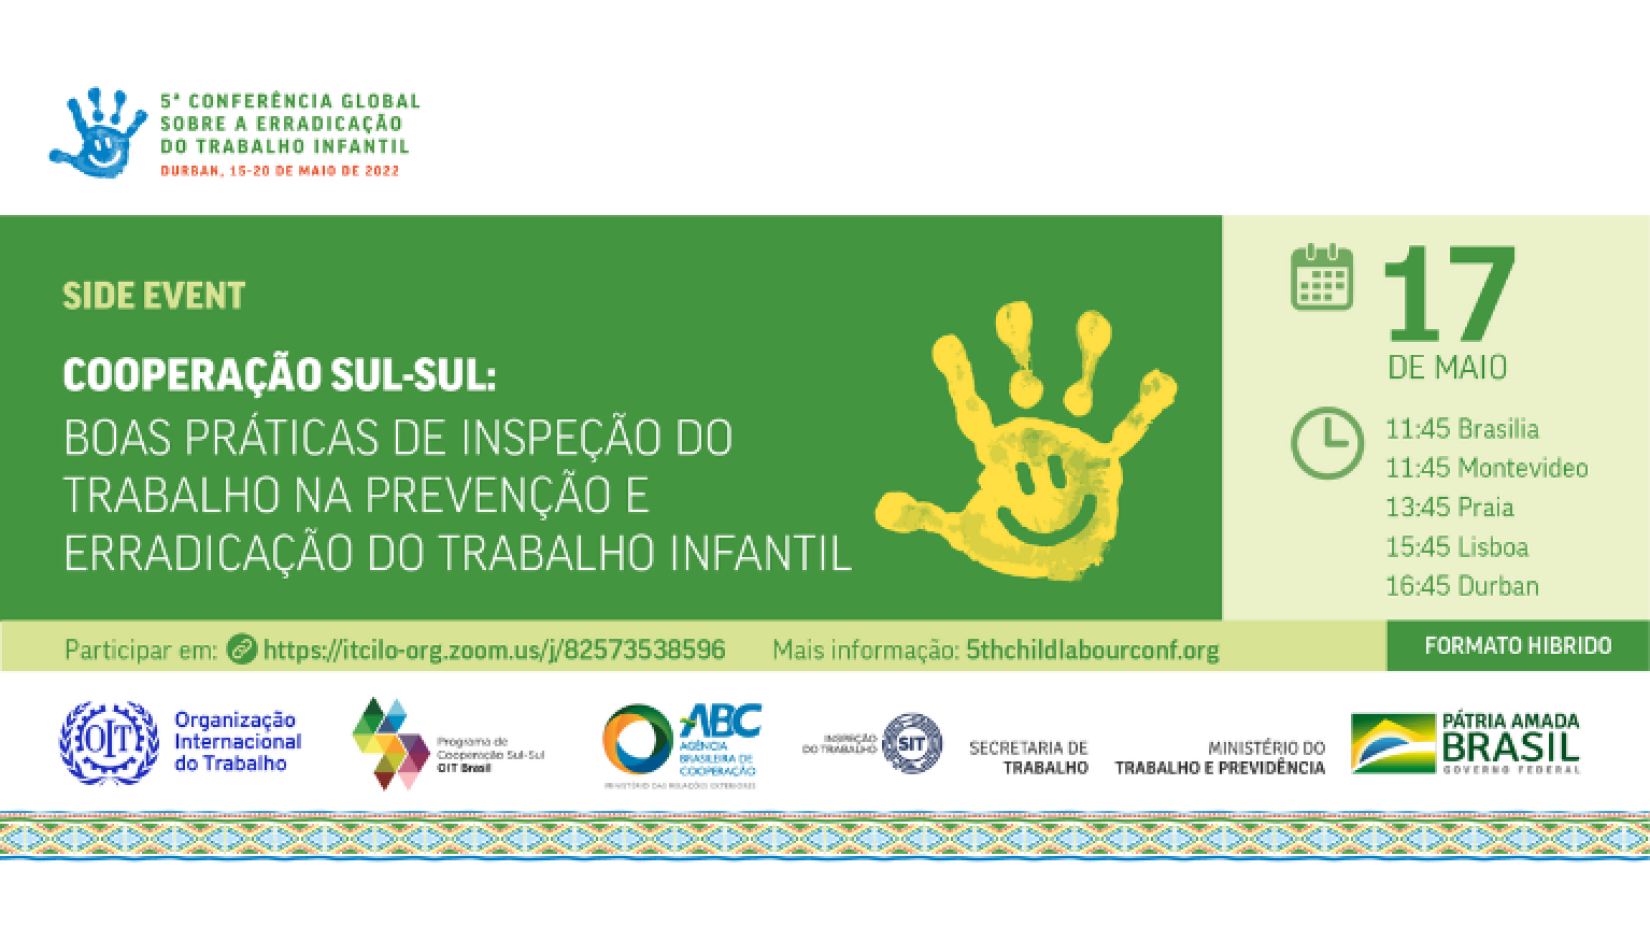 Convite para evento "Cooperação Sul-Sul: Boas práticas da inspeção do trabalho na prevenção e erradicação do trabalho infantil", da OIT.